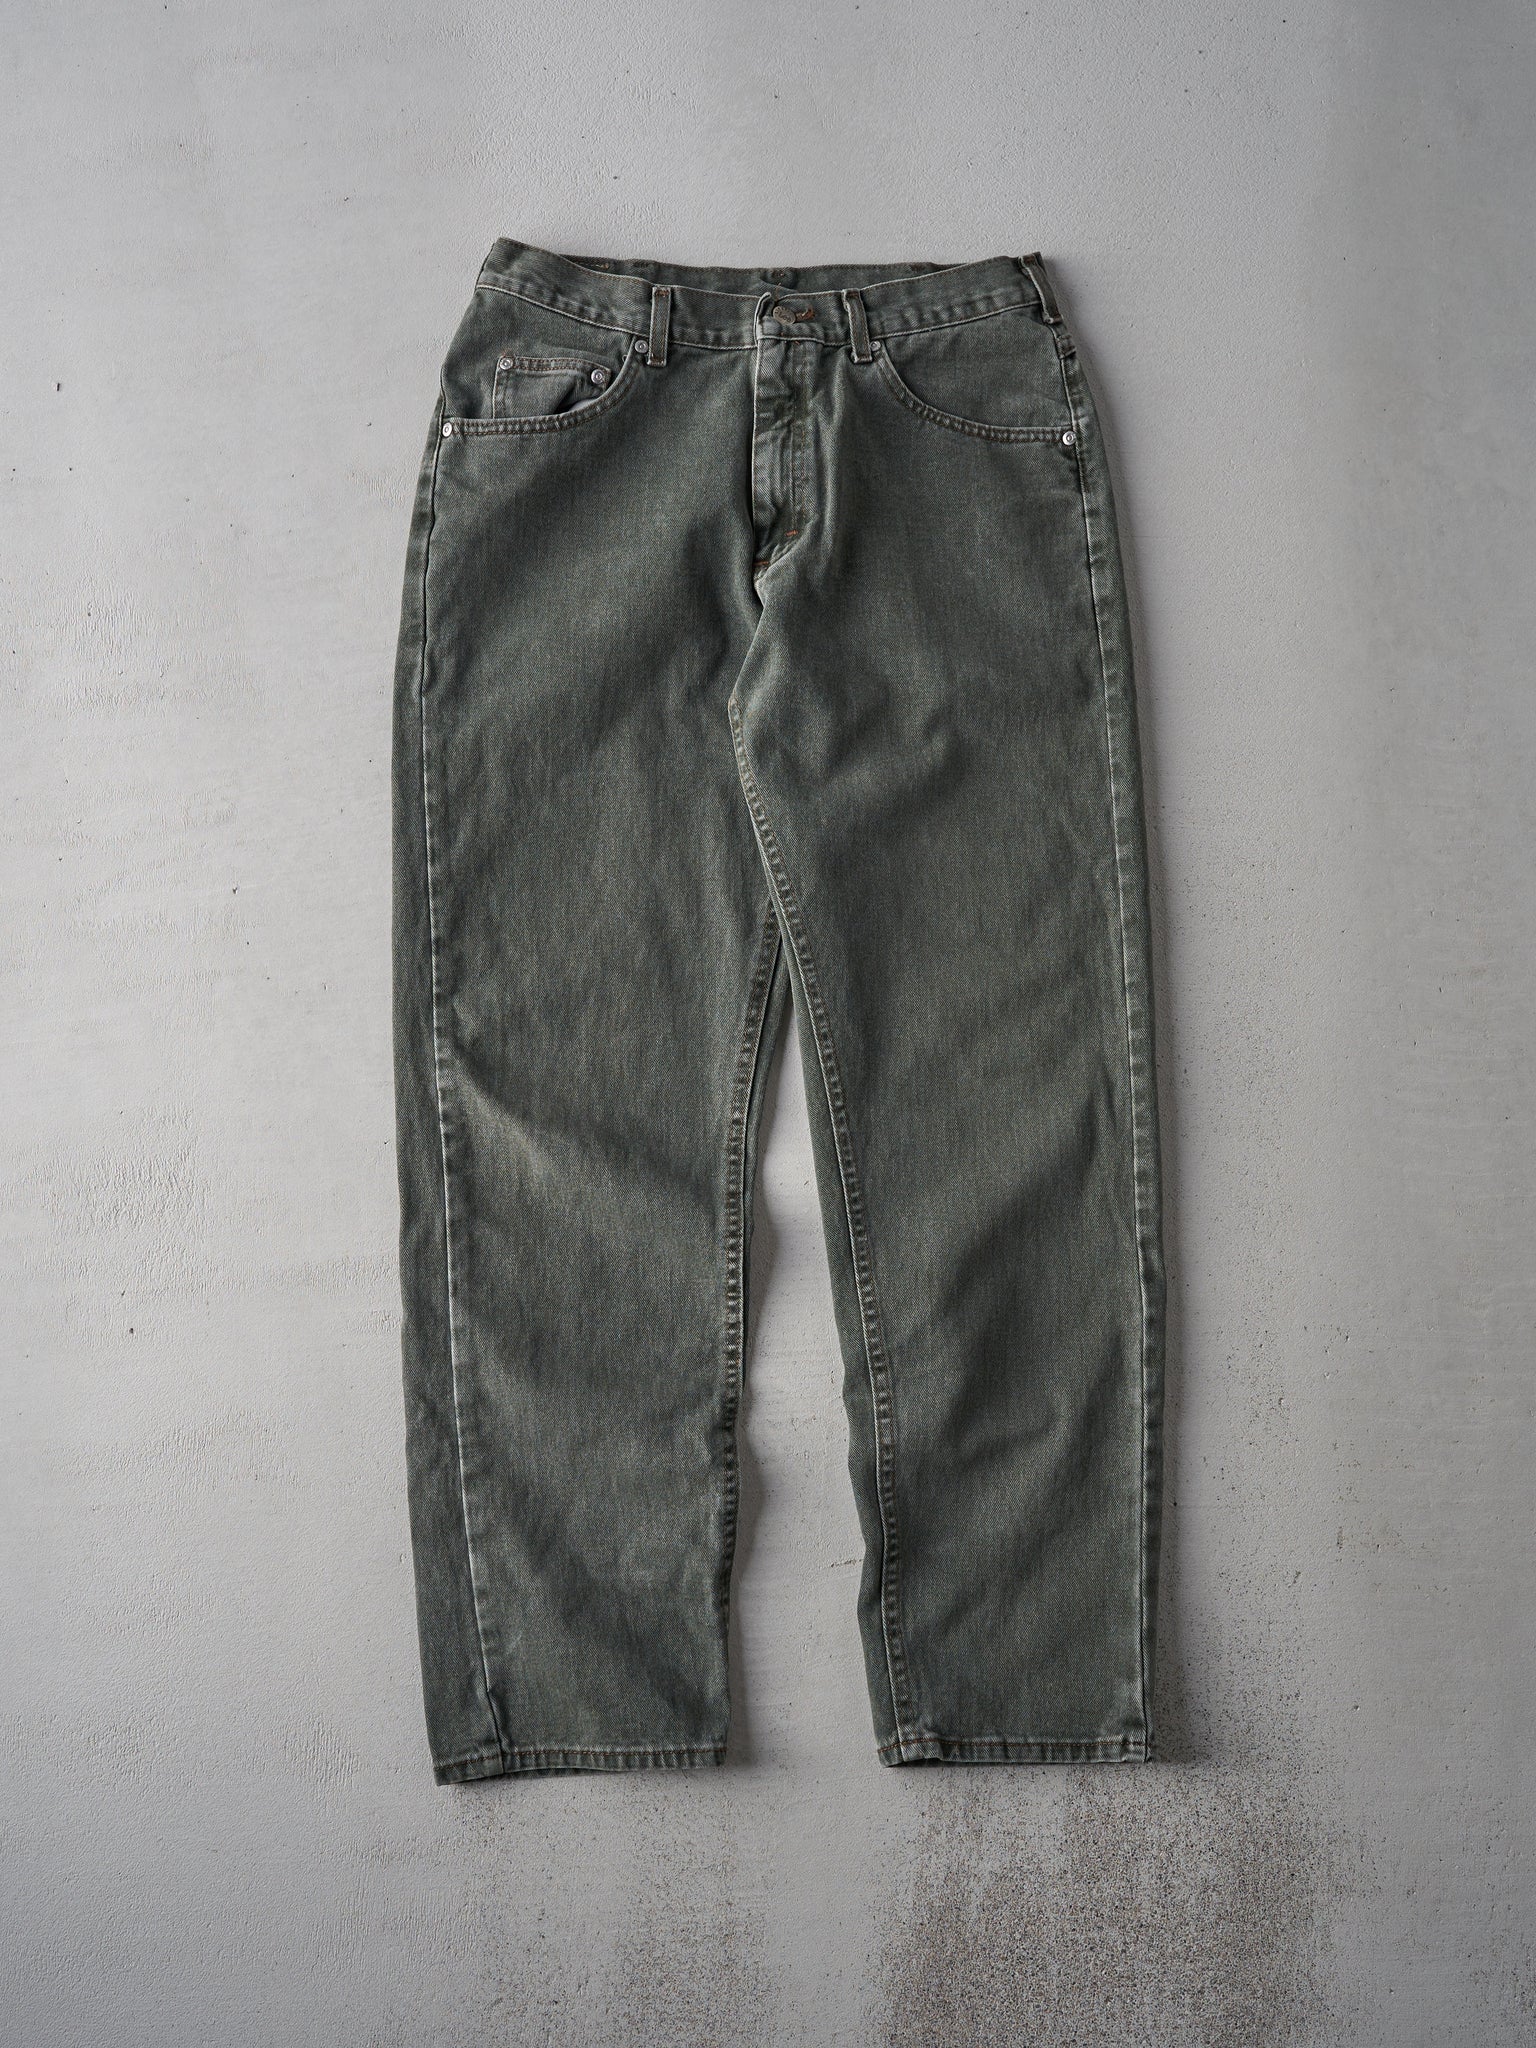 Vintage 90s Dark Green Lee Riveted Pants (33x31)